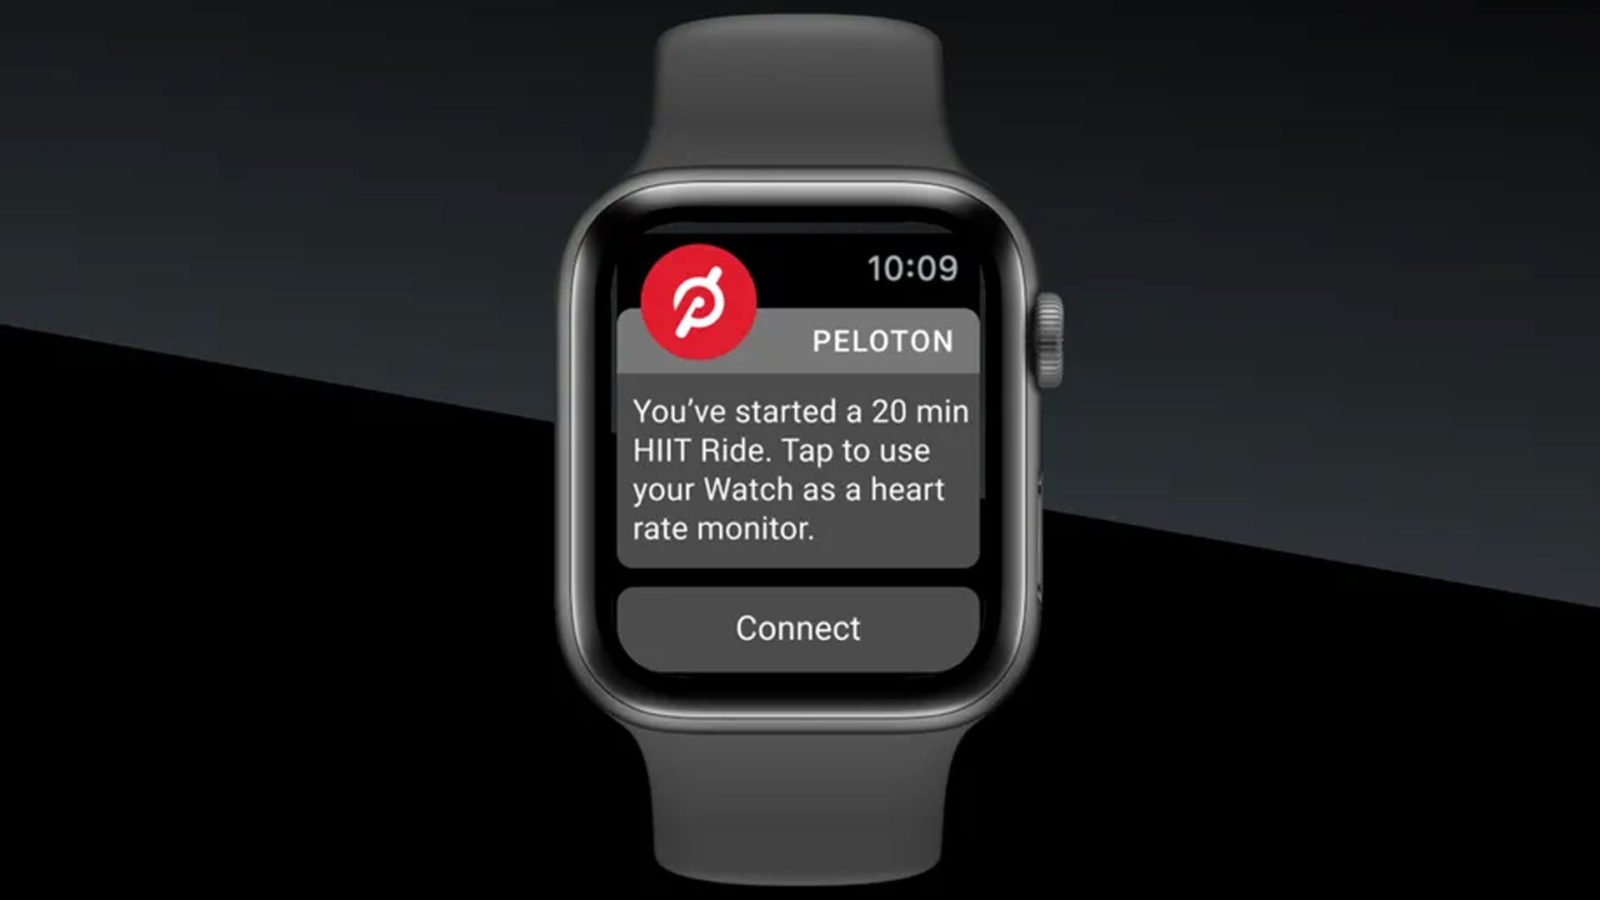 Apple Watch gebruikers kunnen nu al hun Peloton apparaten koppelen